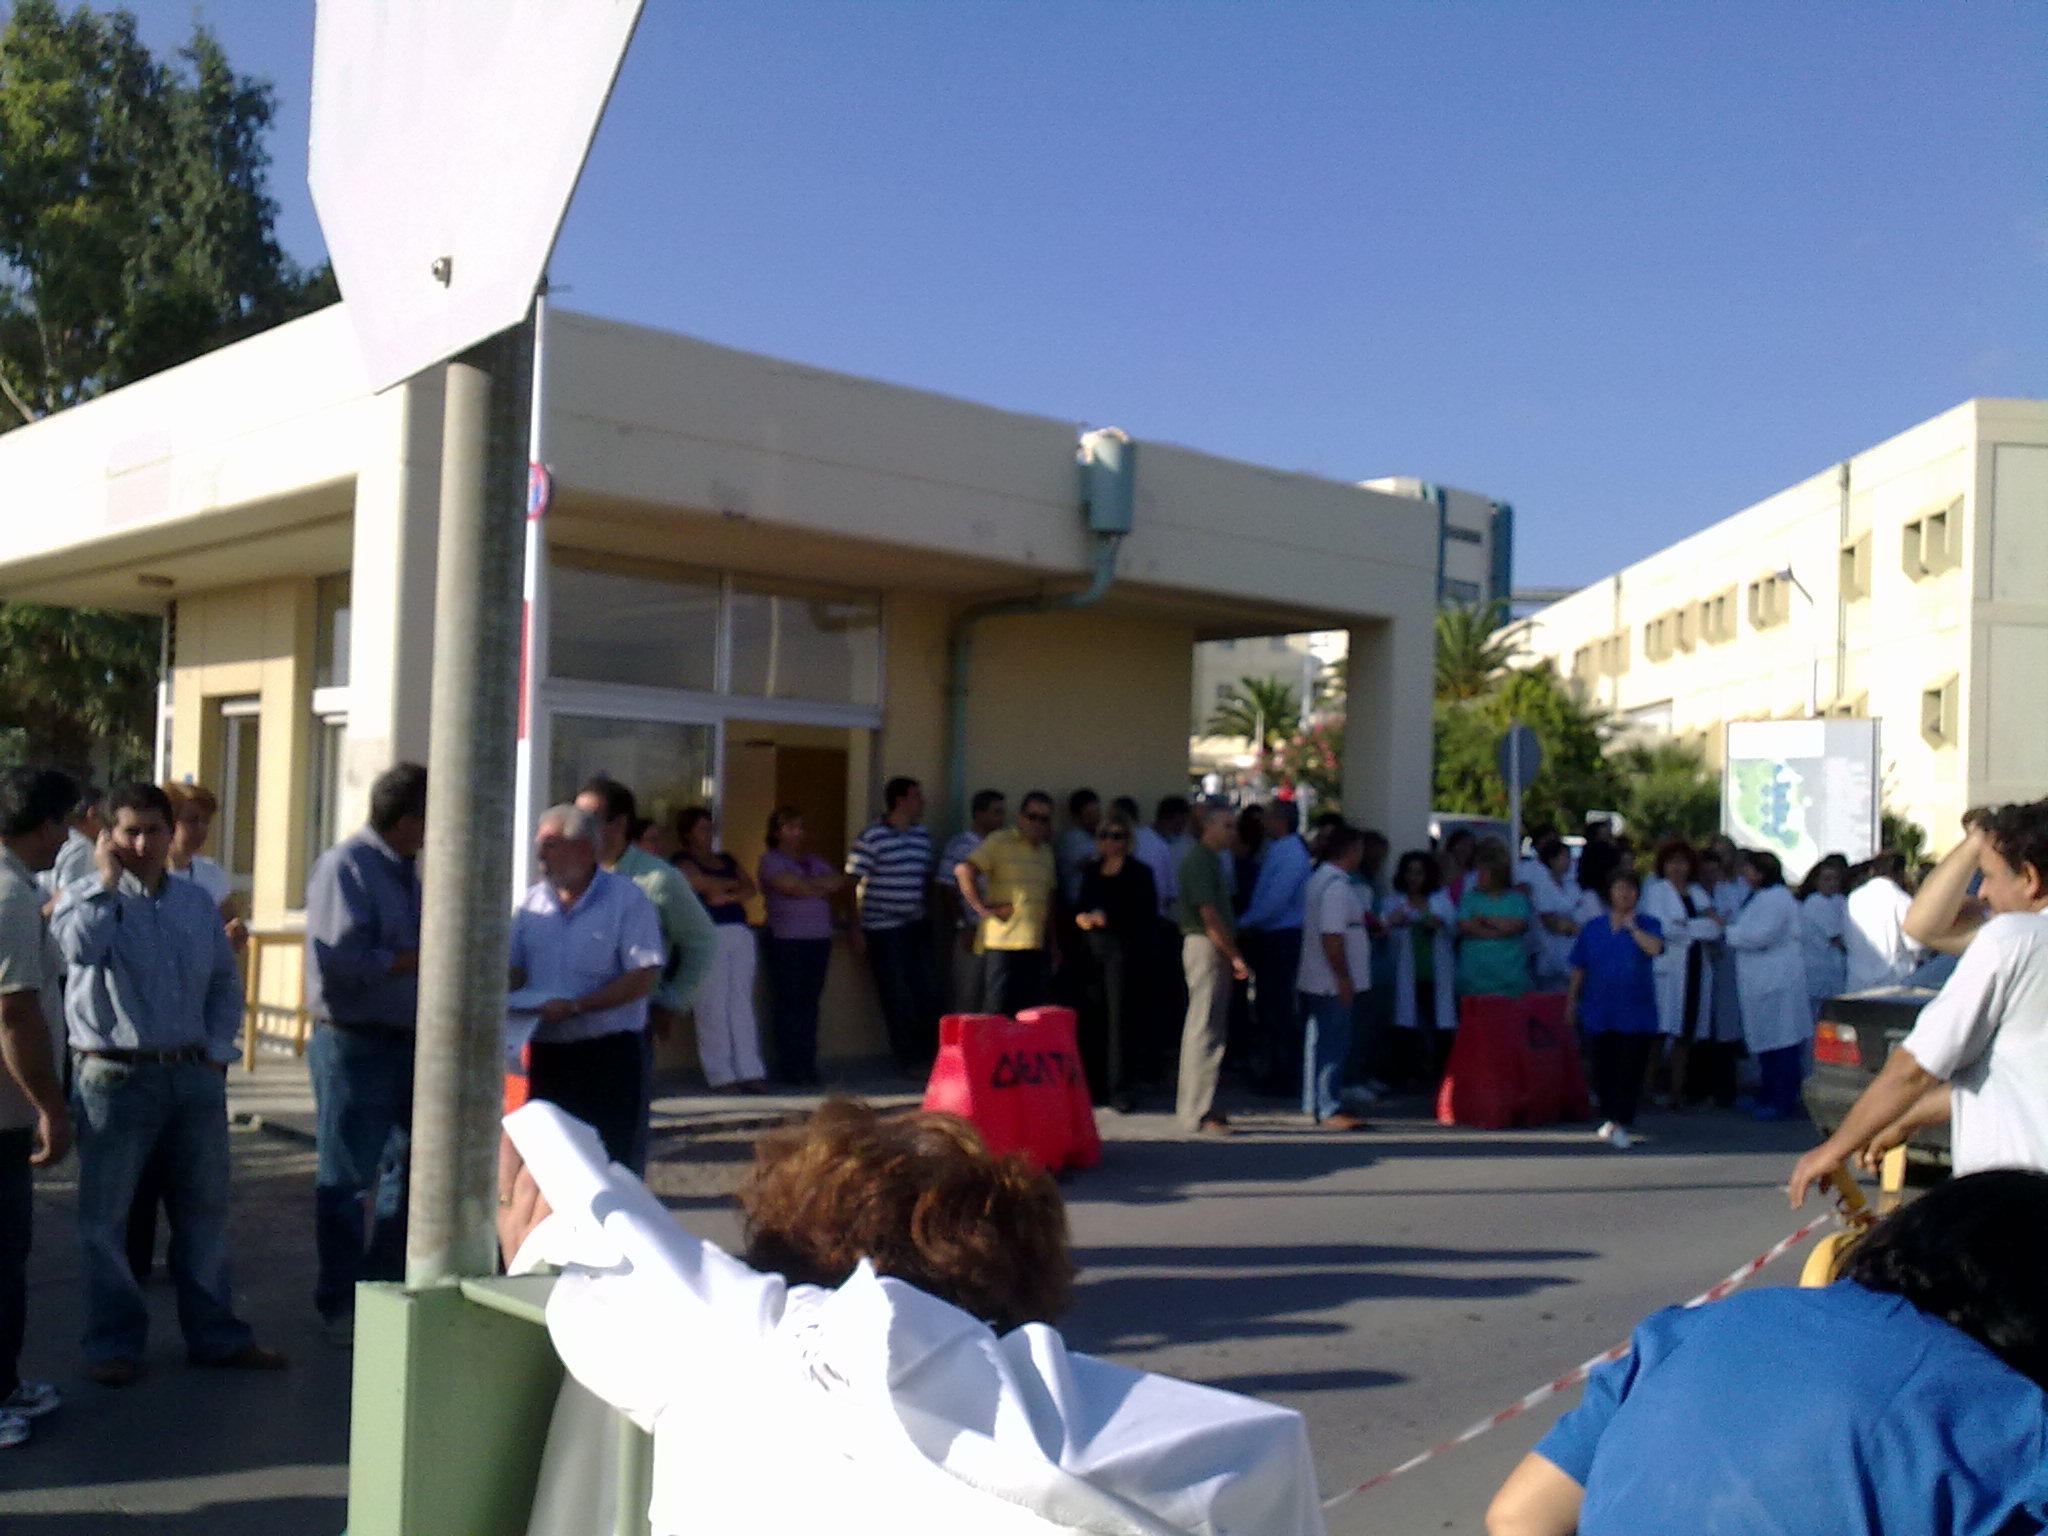 Ξεσηκώνονται οι εργαζόμενοι στο Πανεπιστημιακό νοσοκομείο Ηρακλείου - Ξεκινούν κινητοποιήσεις